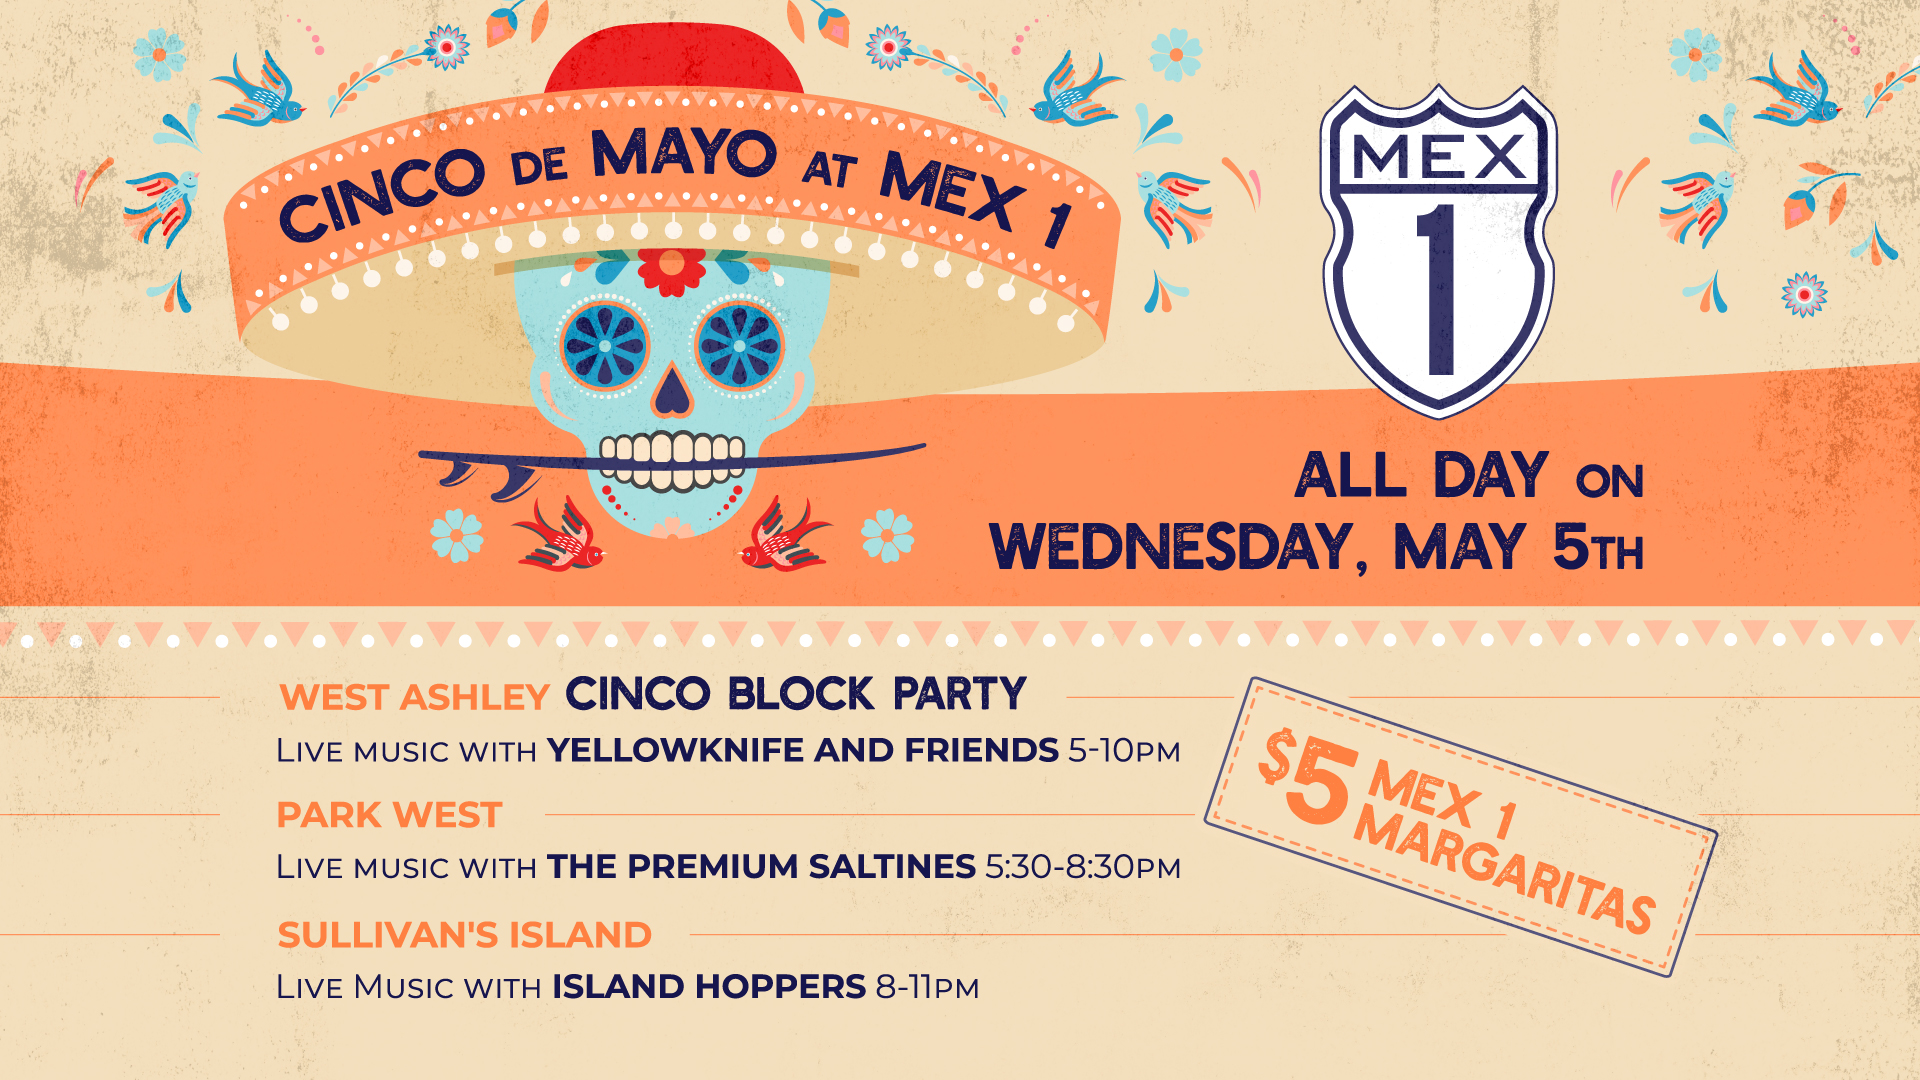 Cinco de Mayo at Mex 1 on May 5th, at 5pm